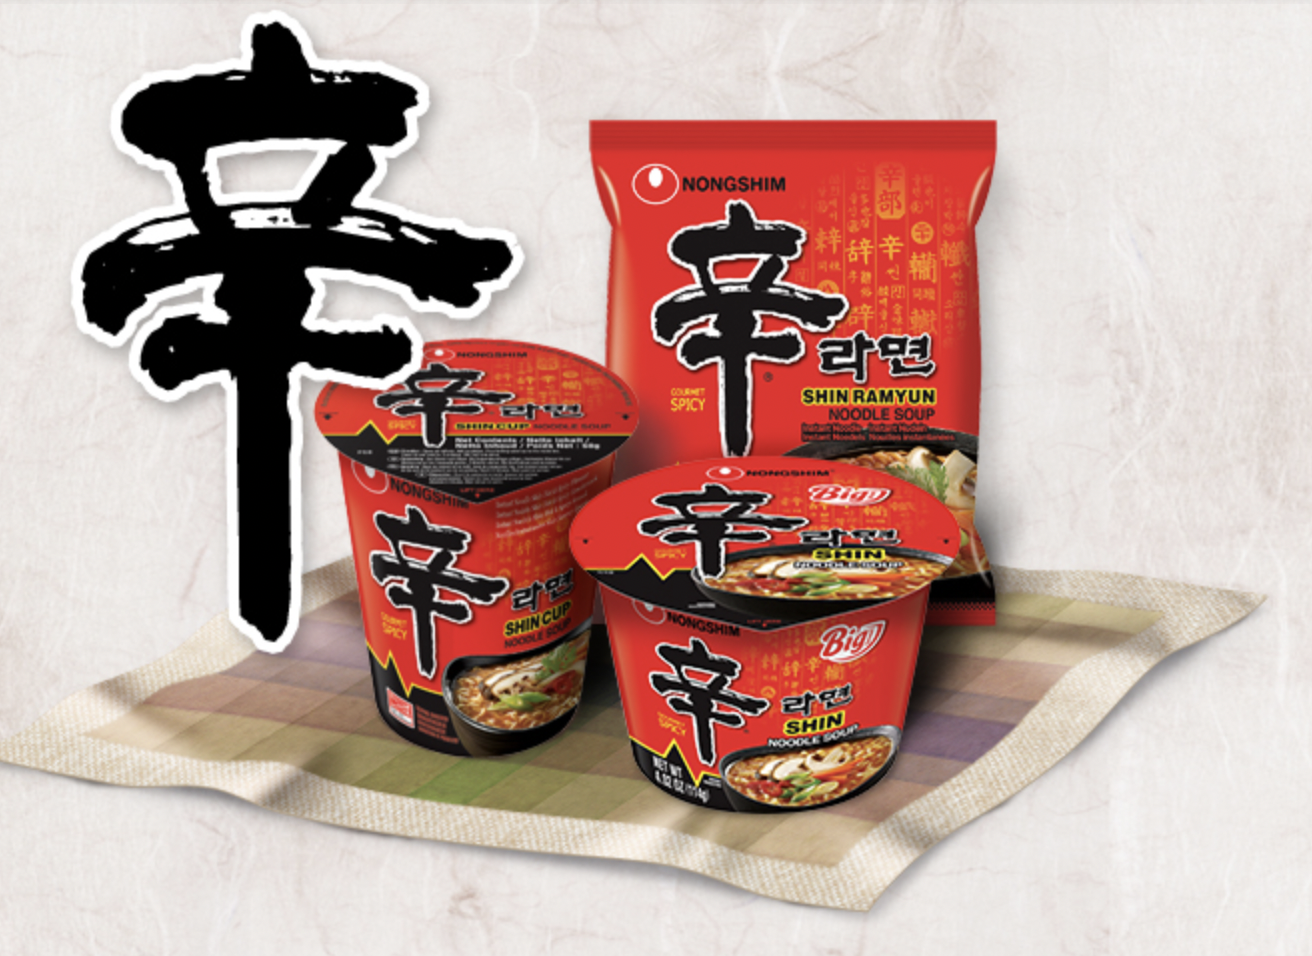 The famous Nongshim noodles.